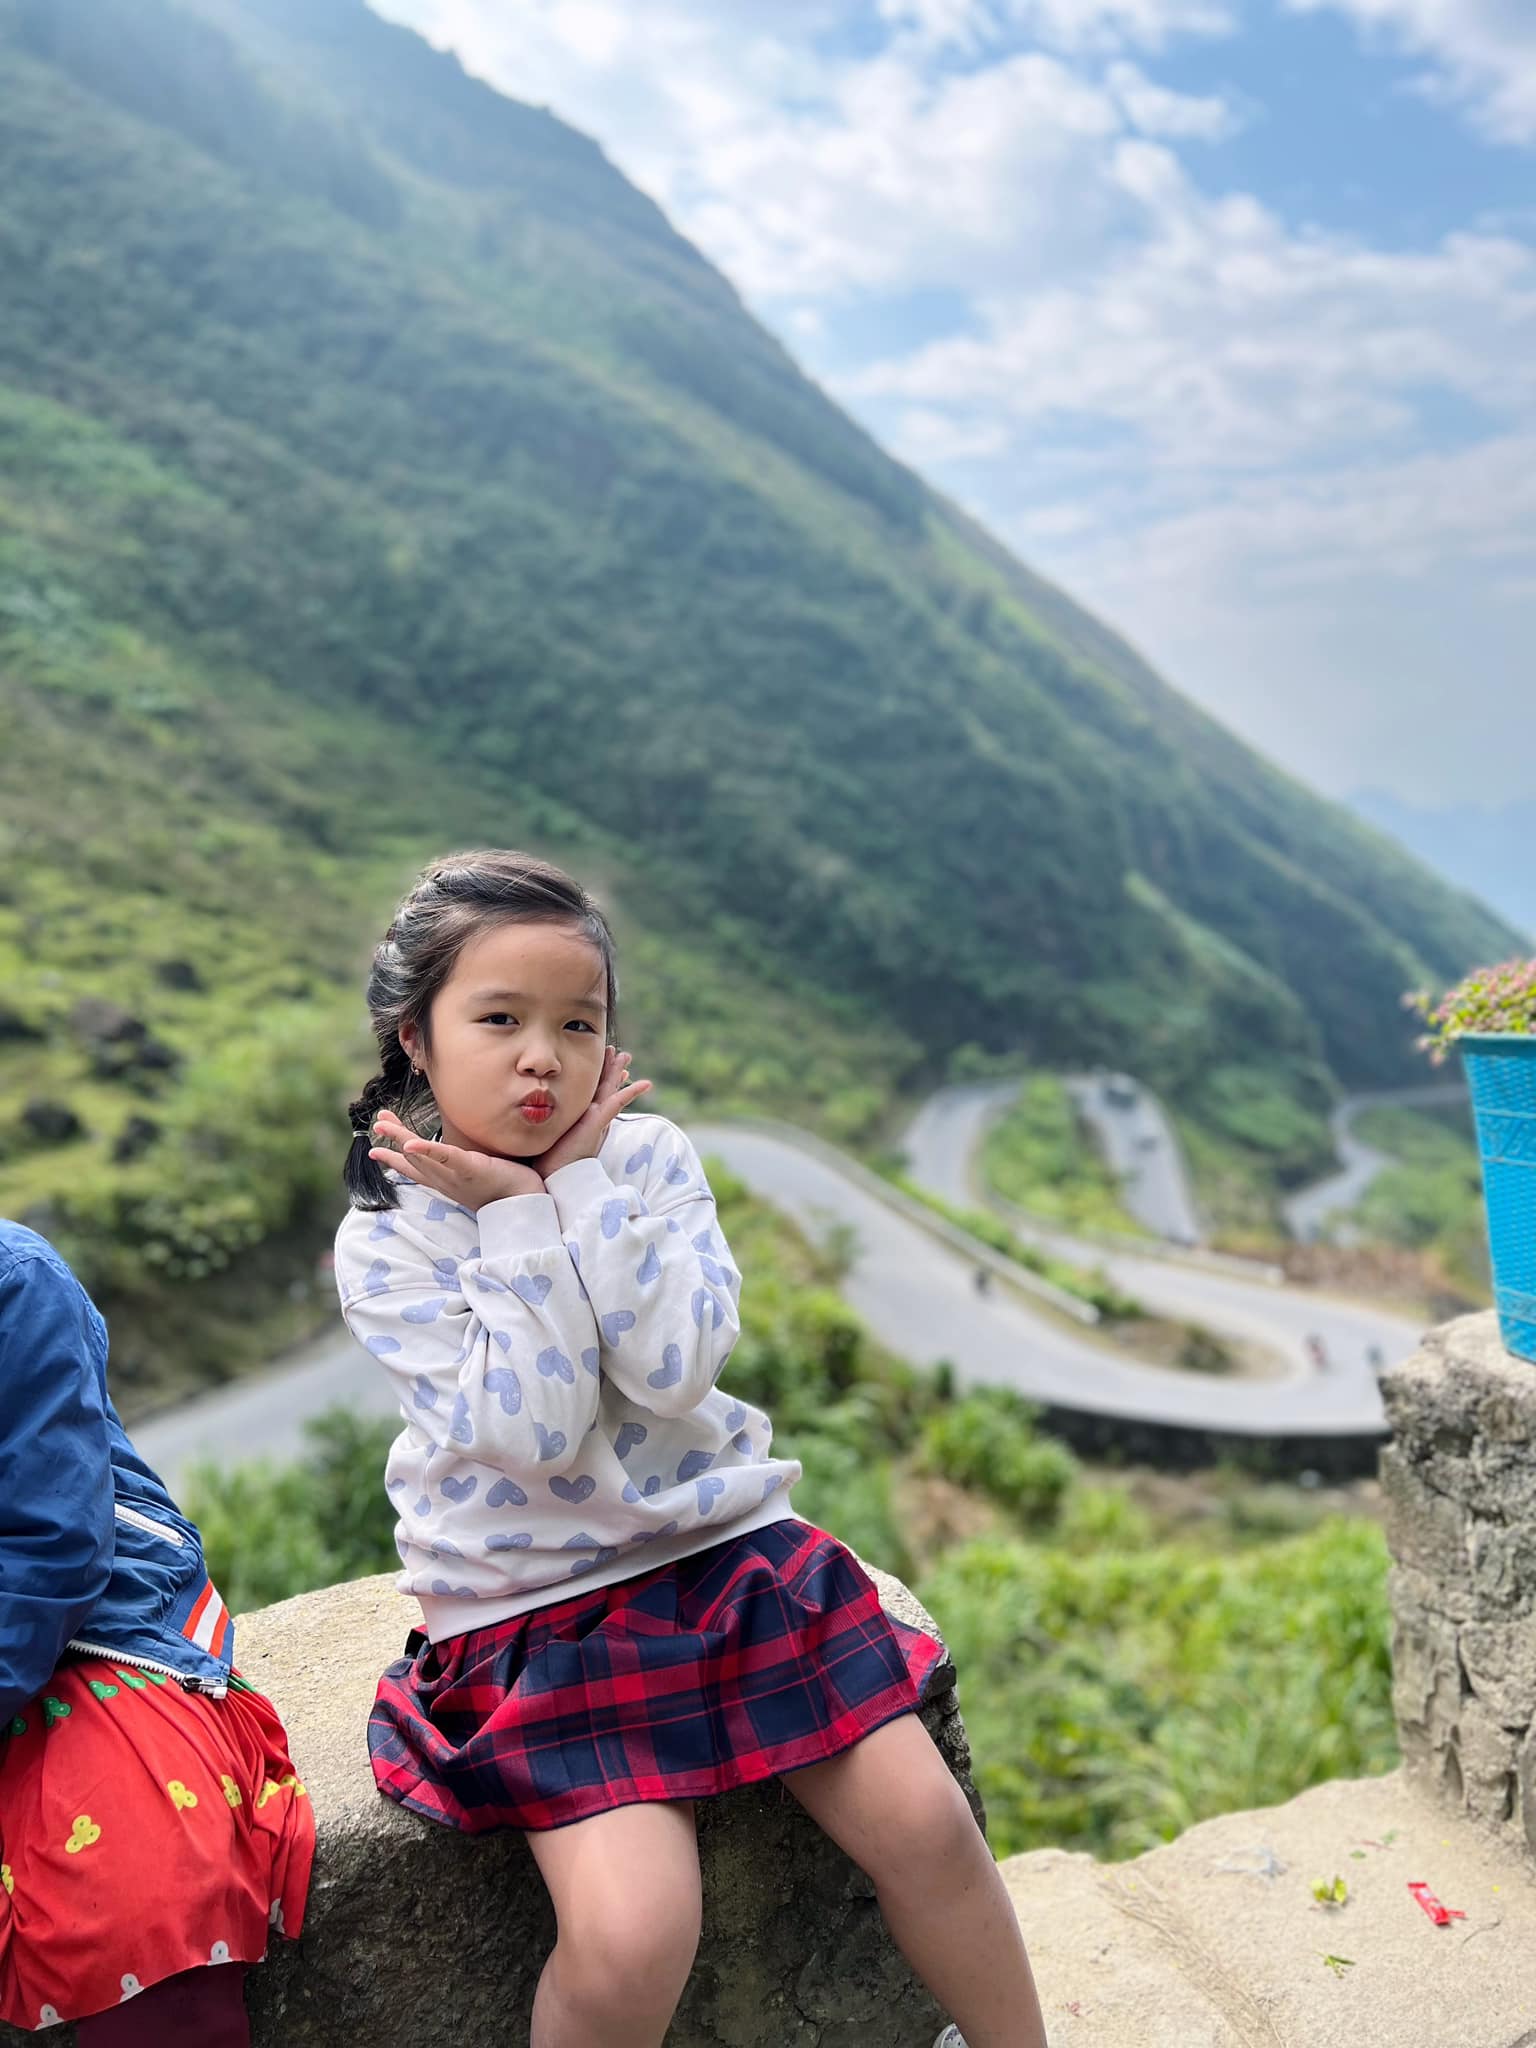 Chuyến đi khó quên của gia đình nhỏ ở Hà Giang, trẻ nhỏ mê mệt, ngắm hoa đào, hoa mận rợp trời- Ảnh 5.